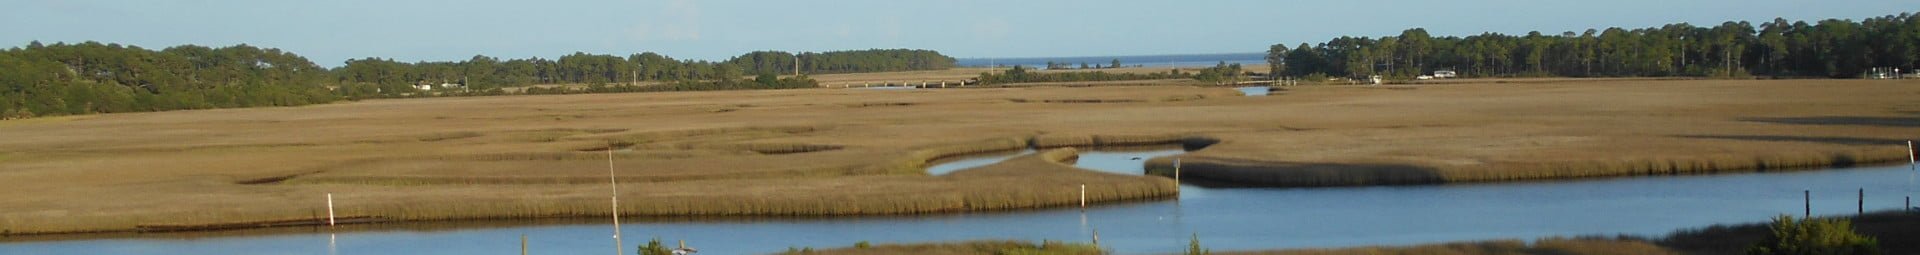 Marsh in Carrabelle Florida